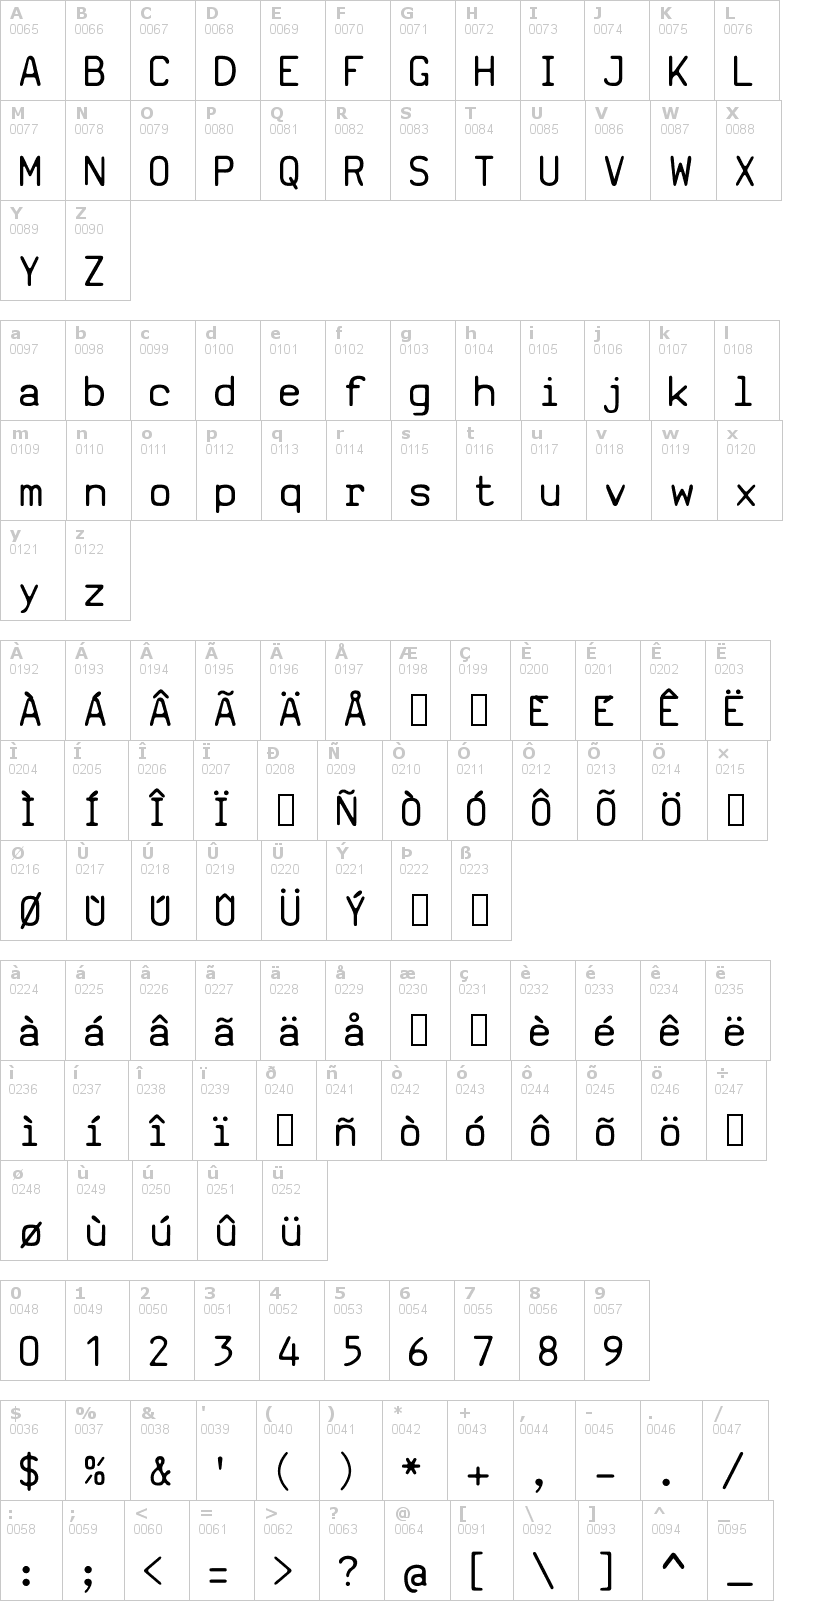 Lettere dell'alfabeto del font sv-basic-manual con le quali è possibile realizzare adesivi prespaziati